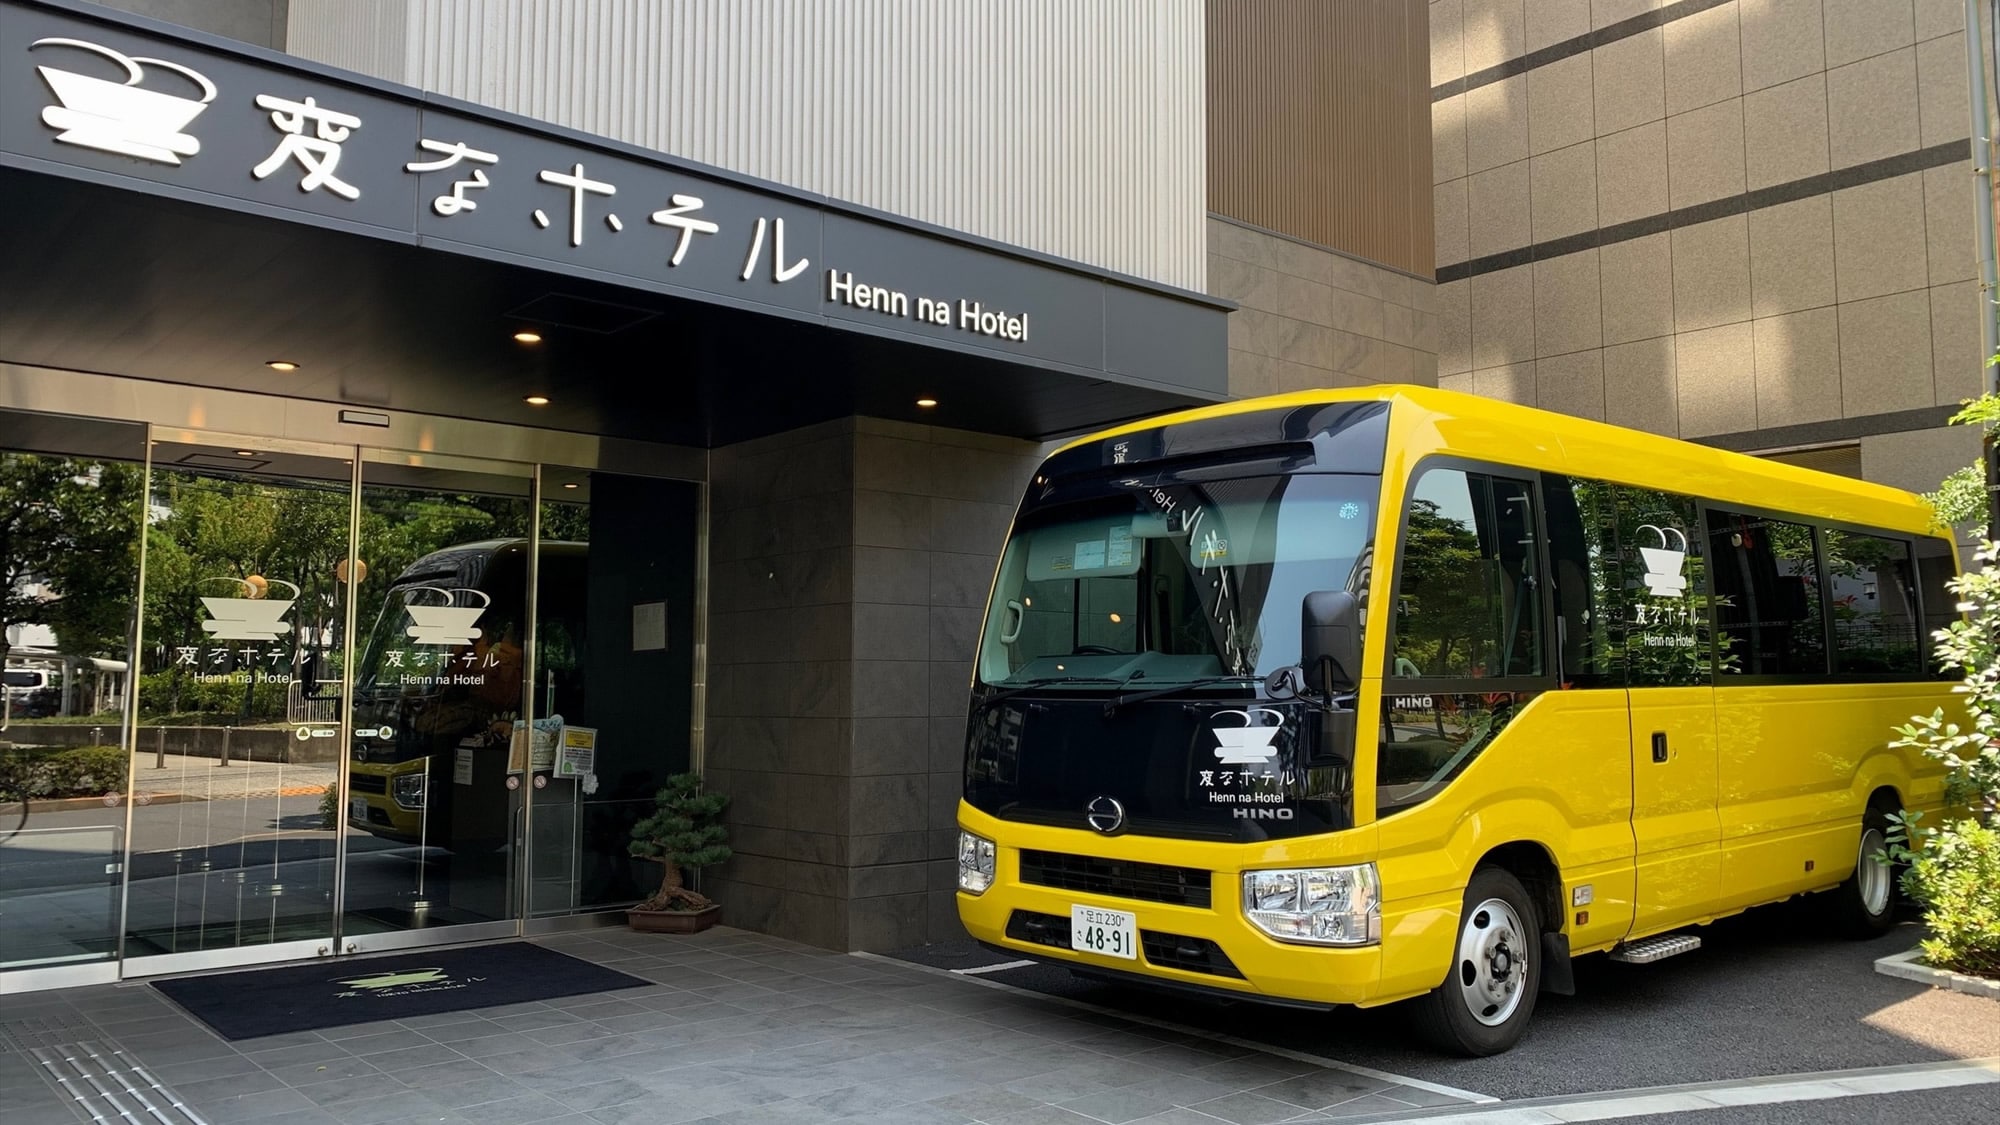  도쿄 디즈니 리조트 방면(약 30분)에의 무료 송영 버스를 매일 운행!